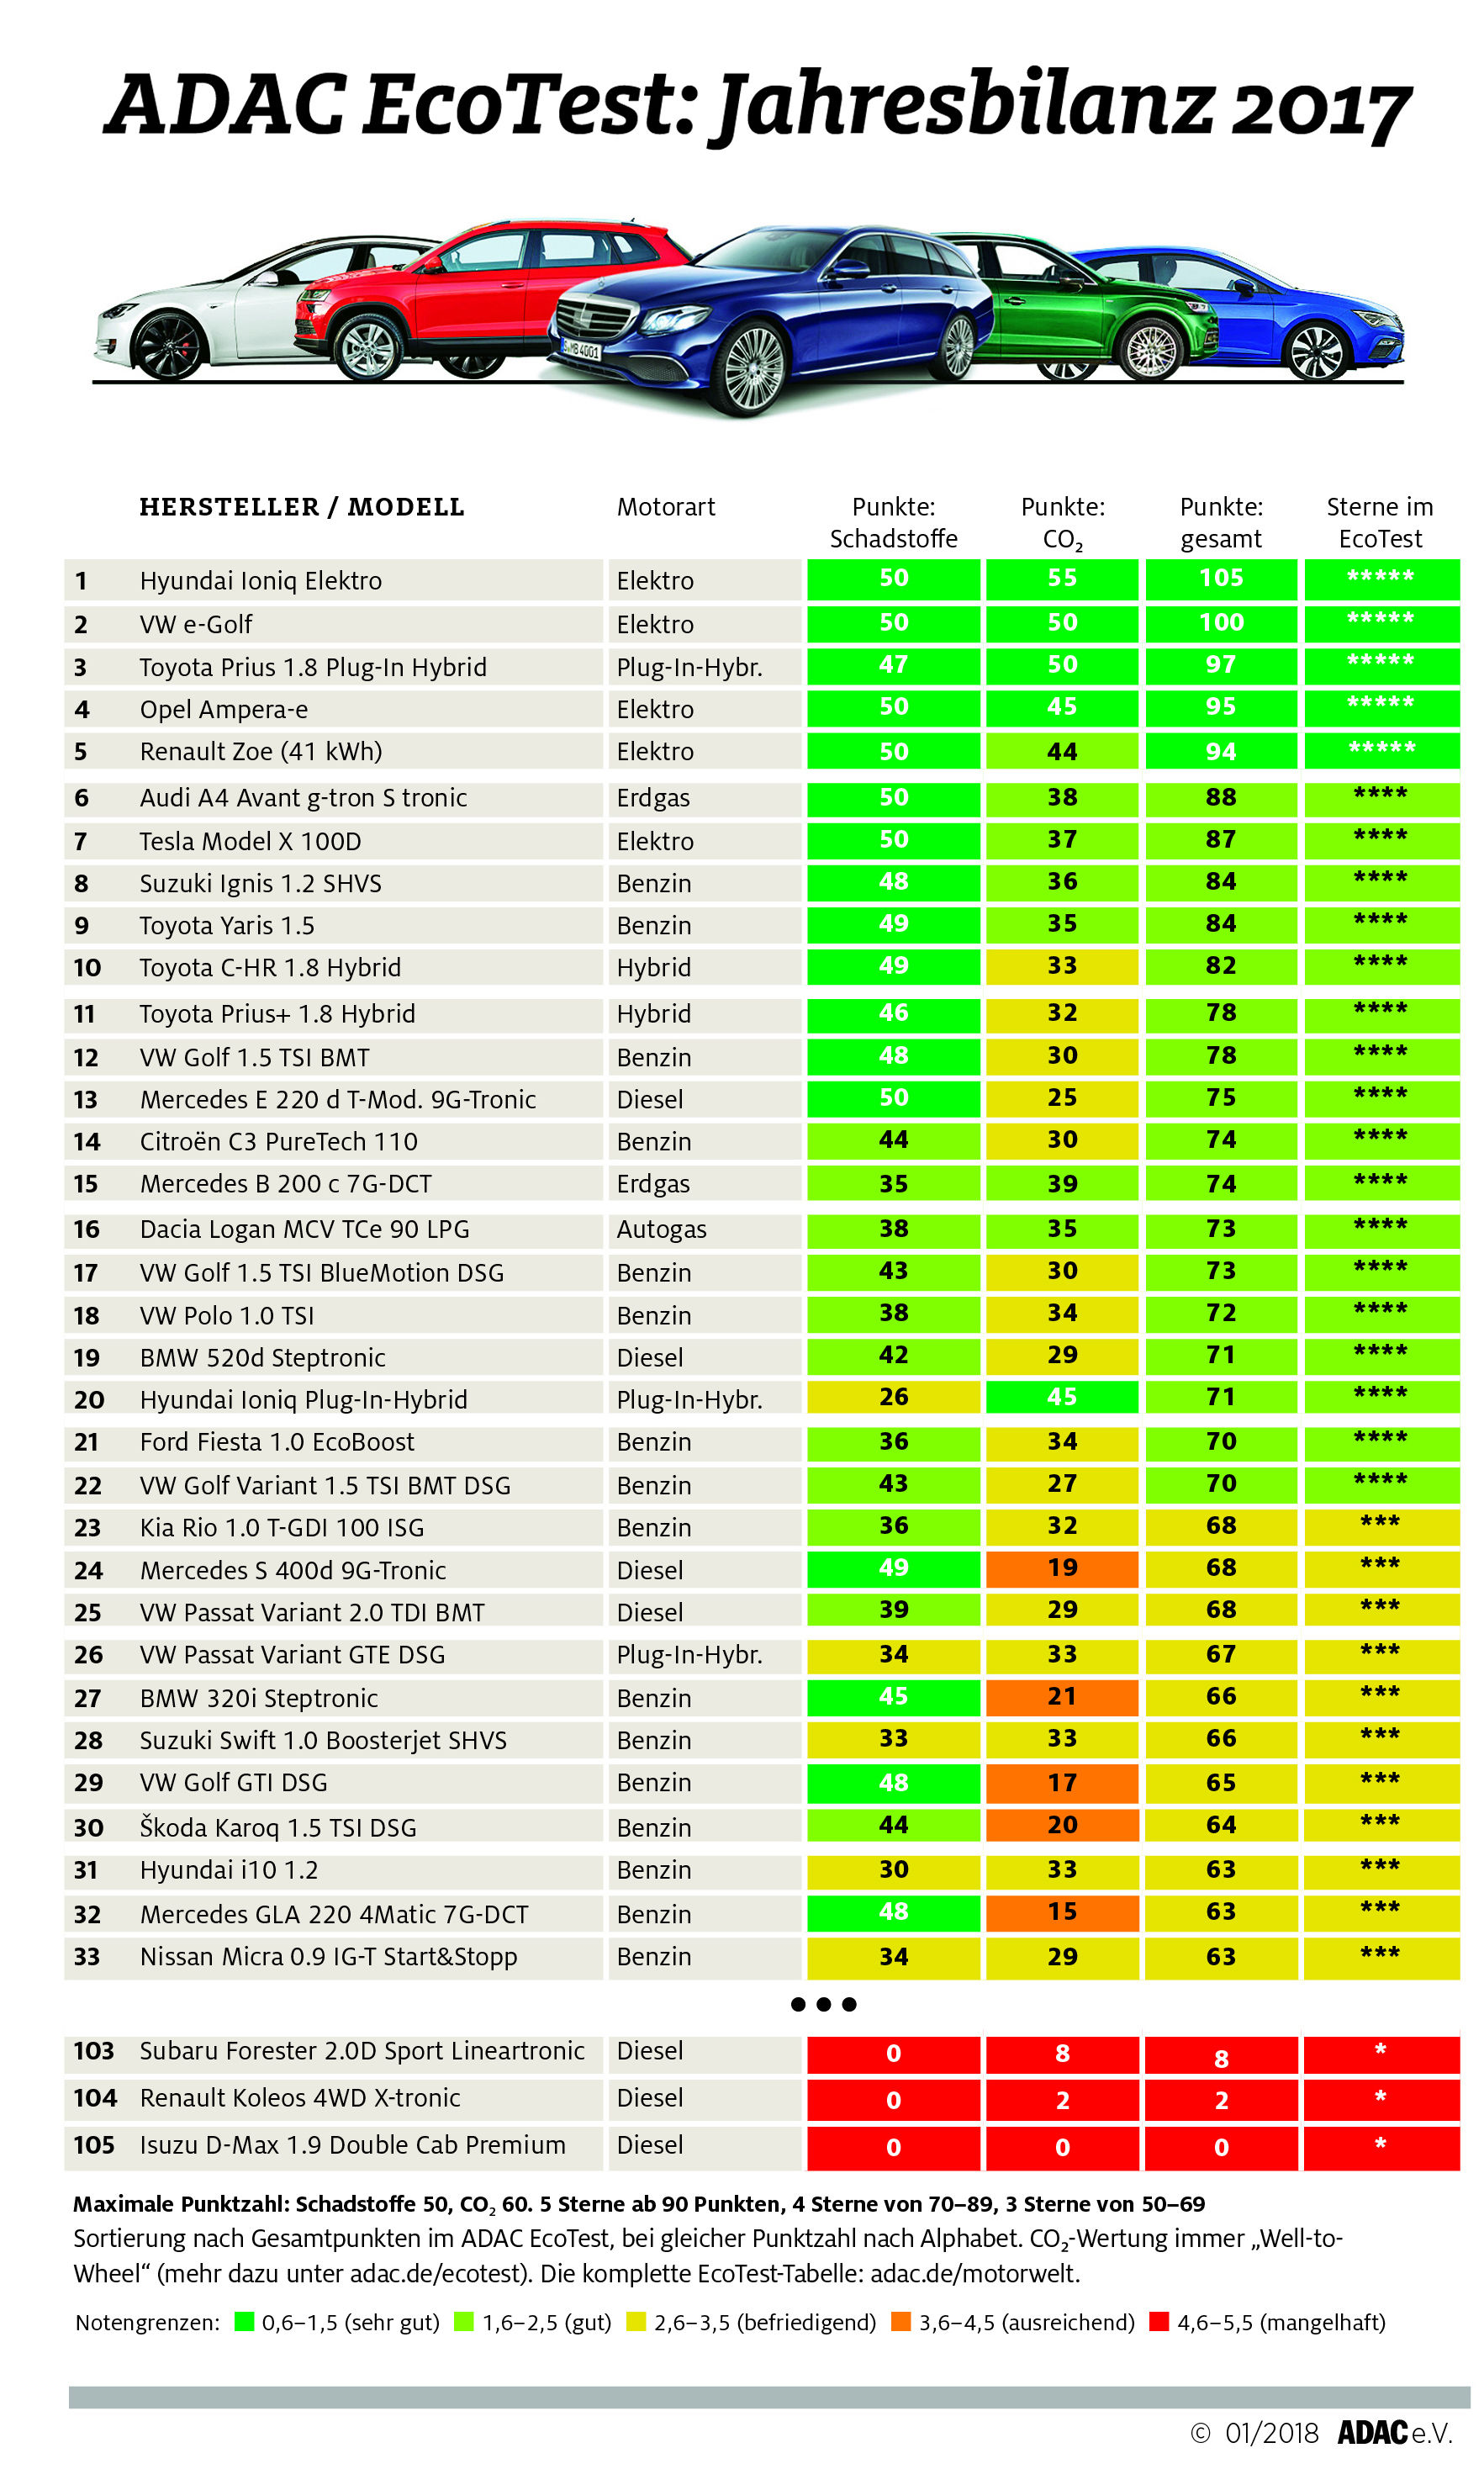 Der erste Verbrenner im Ranking ist der Suzuki Ignis 1 2 SHVS auf dem achten Platz